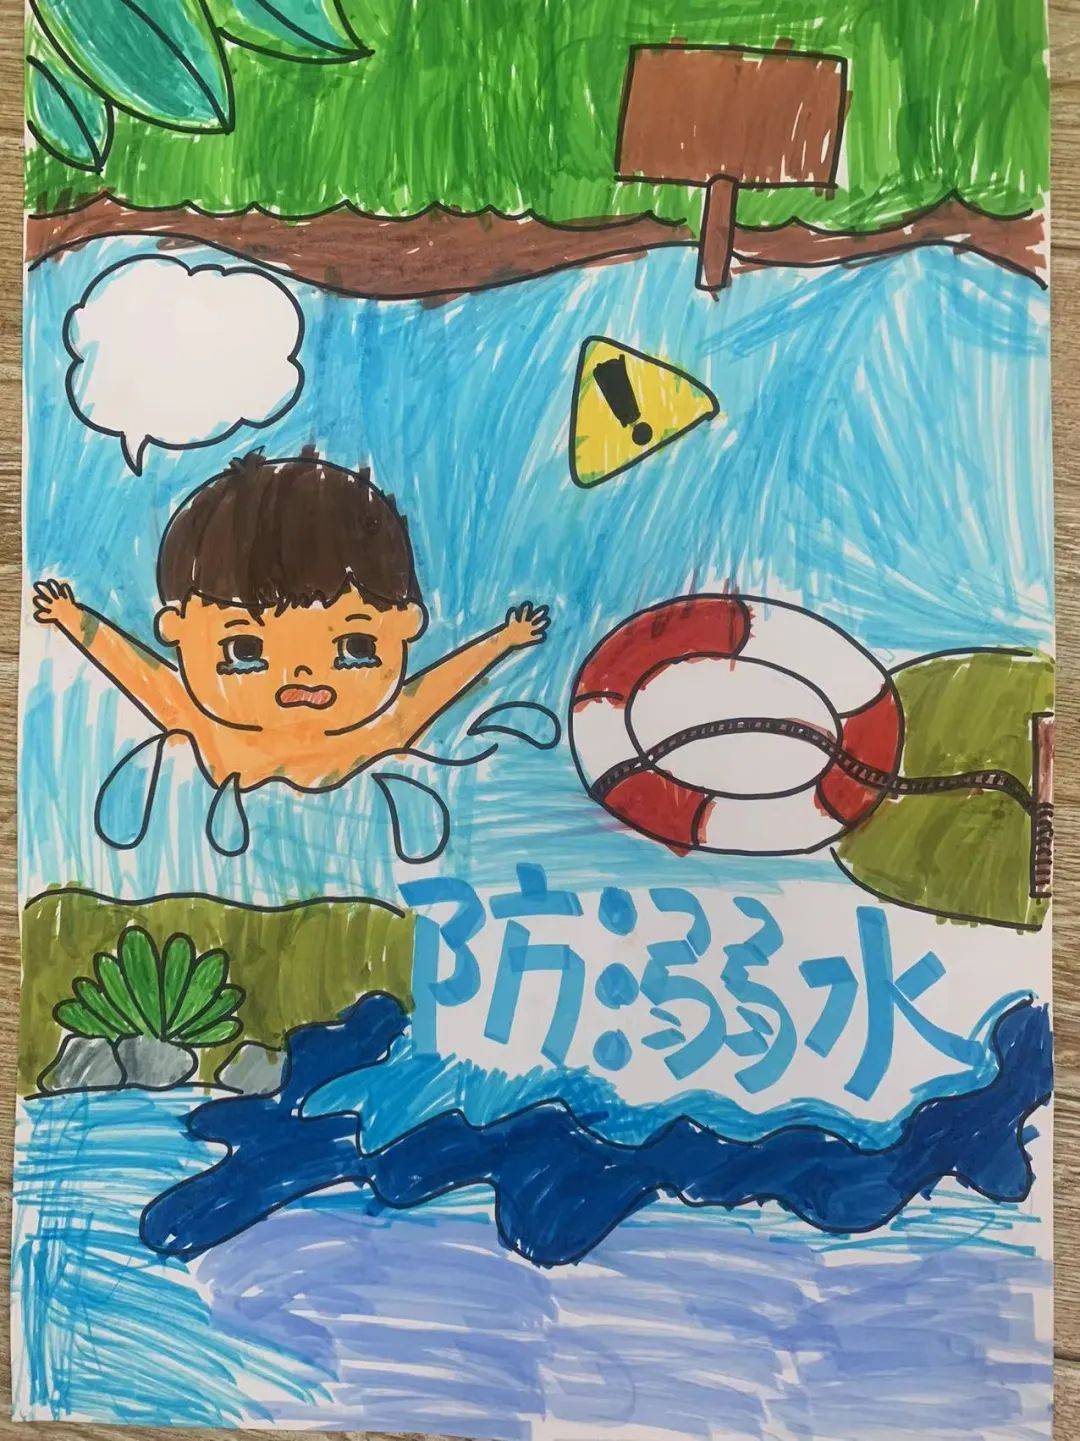 大班的小朋友们精心创作了防溺水的宣传海报,经过园内的作品展览和小